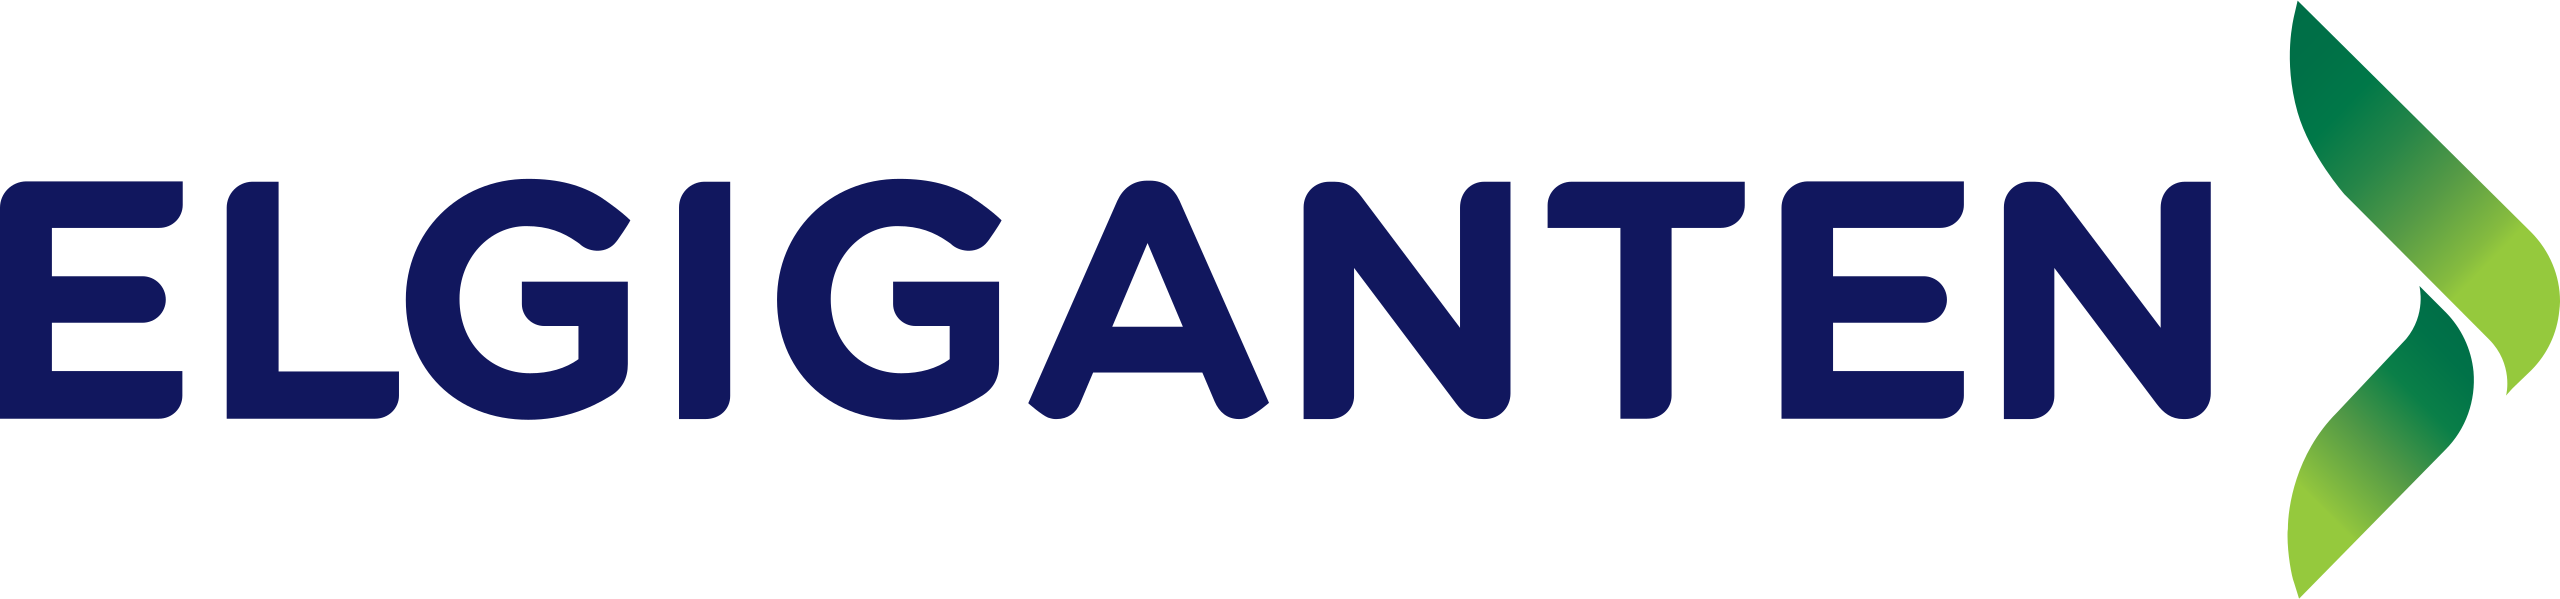 elgiganten_logo